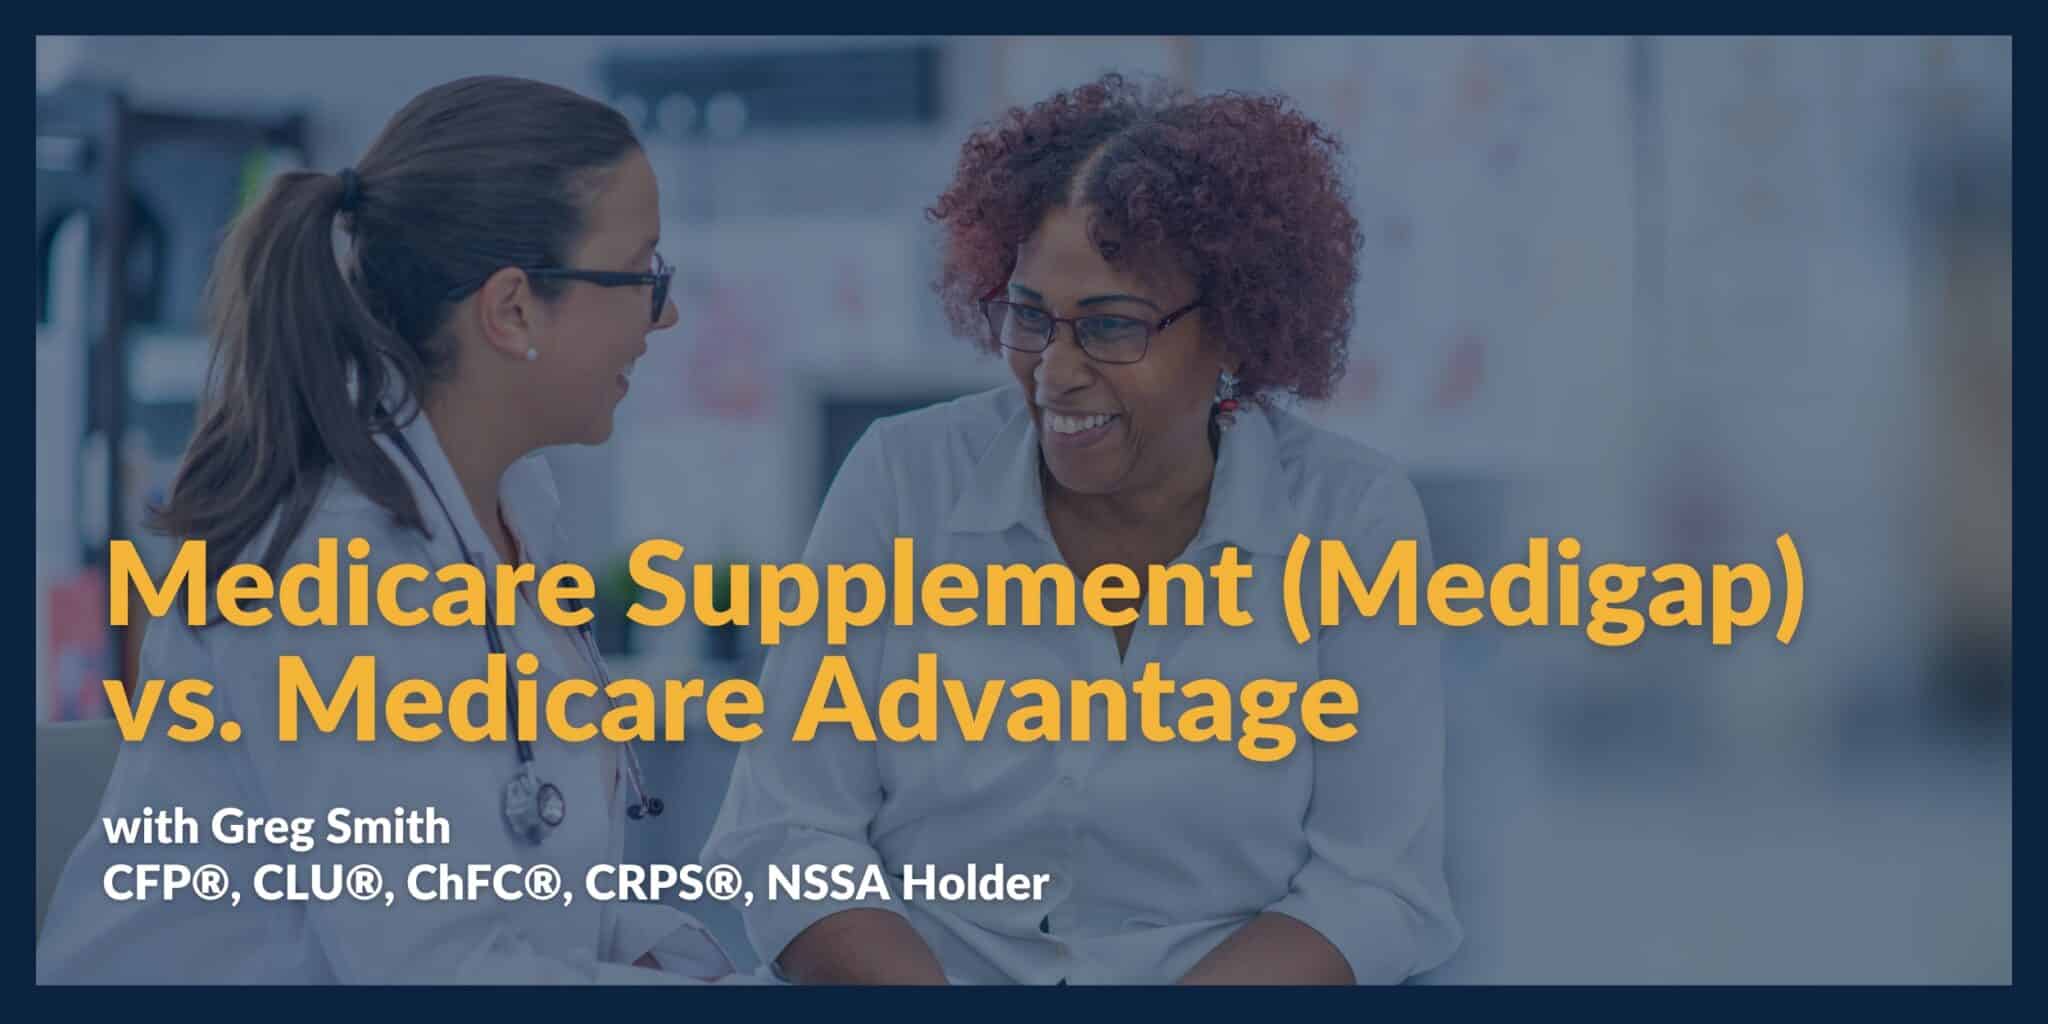 Medicare Supplement (Medigap) Plans vs. Medicare Advantage